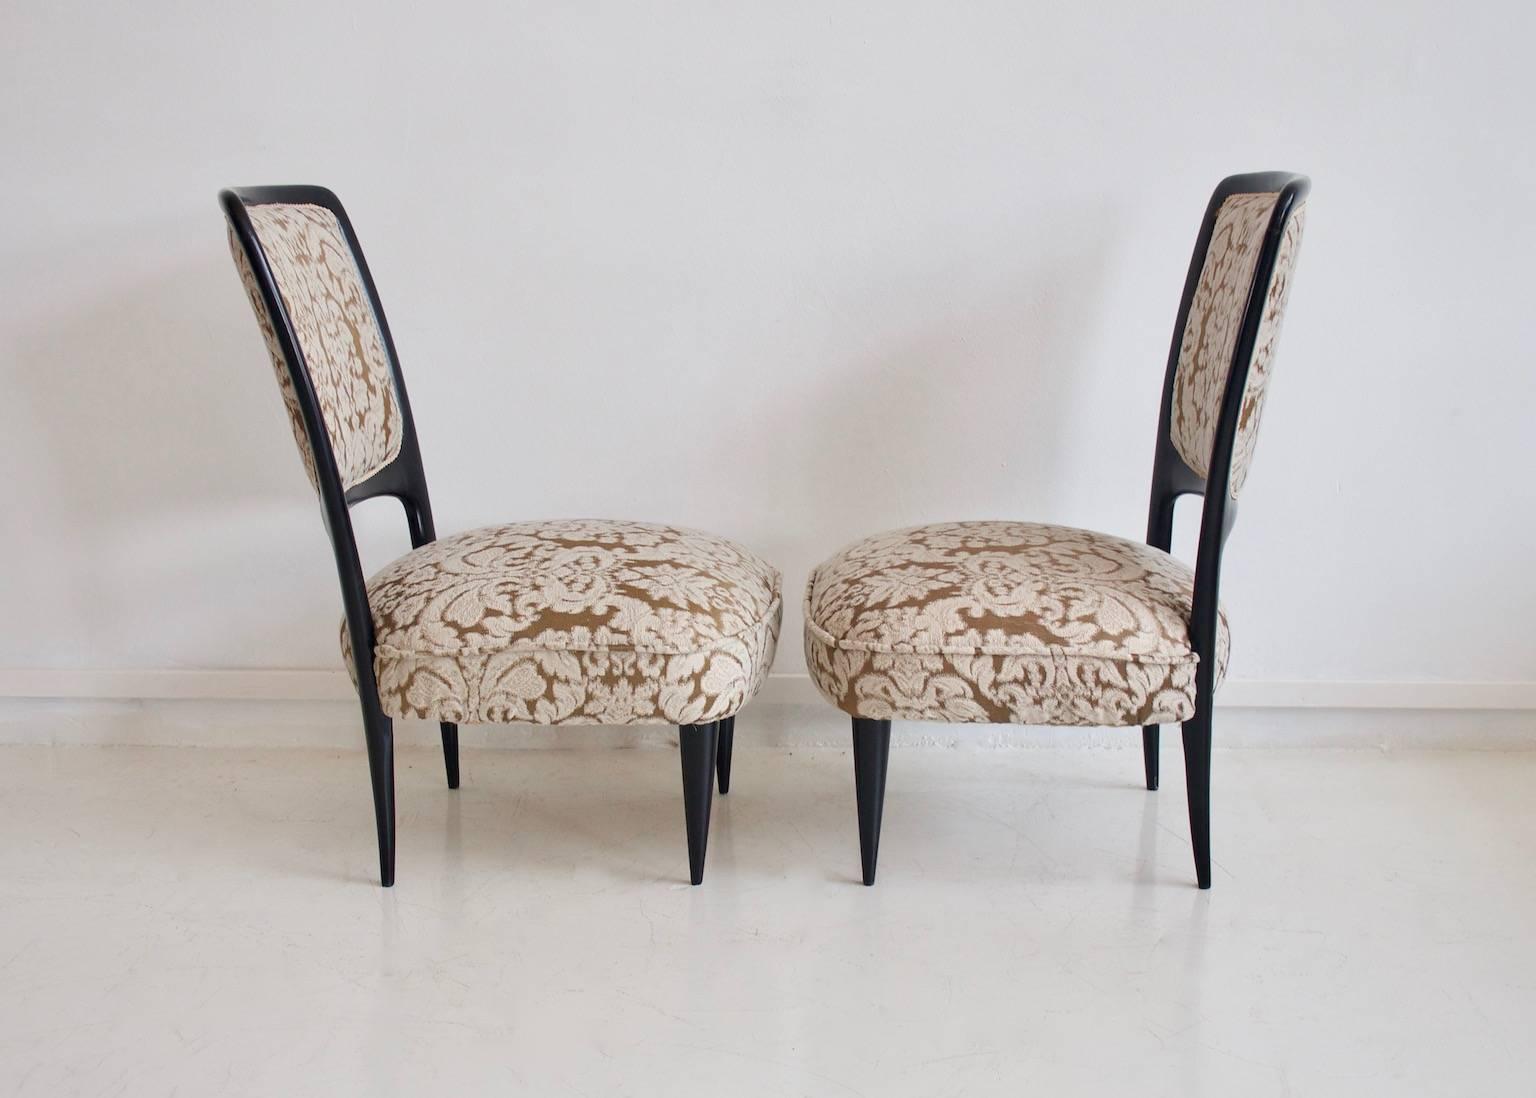 handmade italian chairs